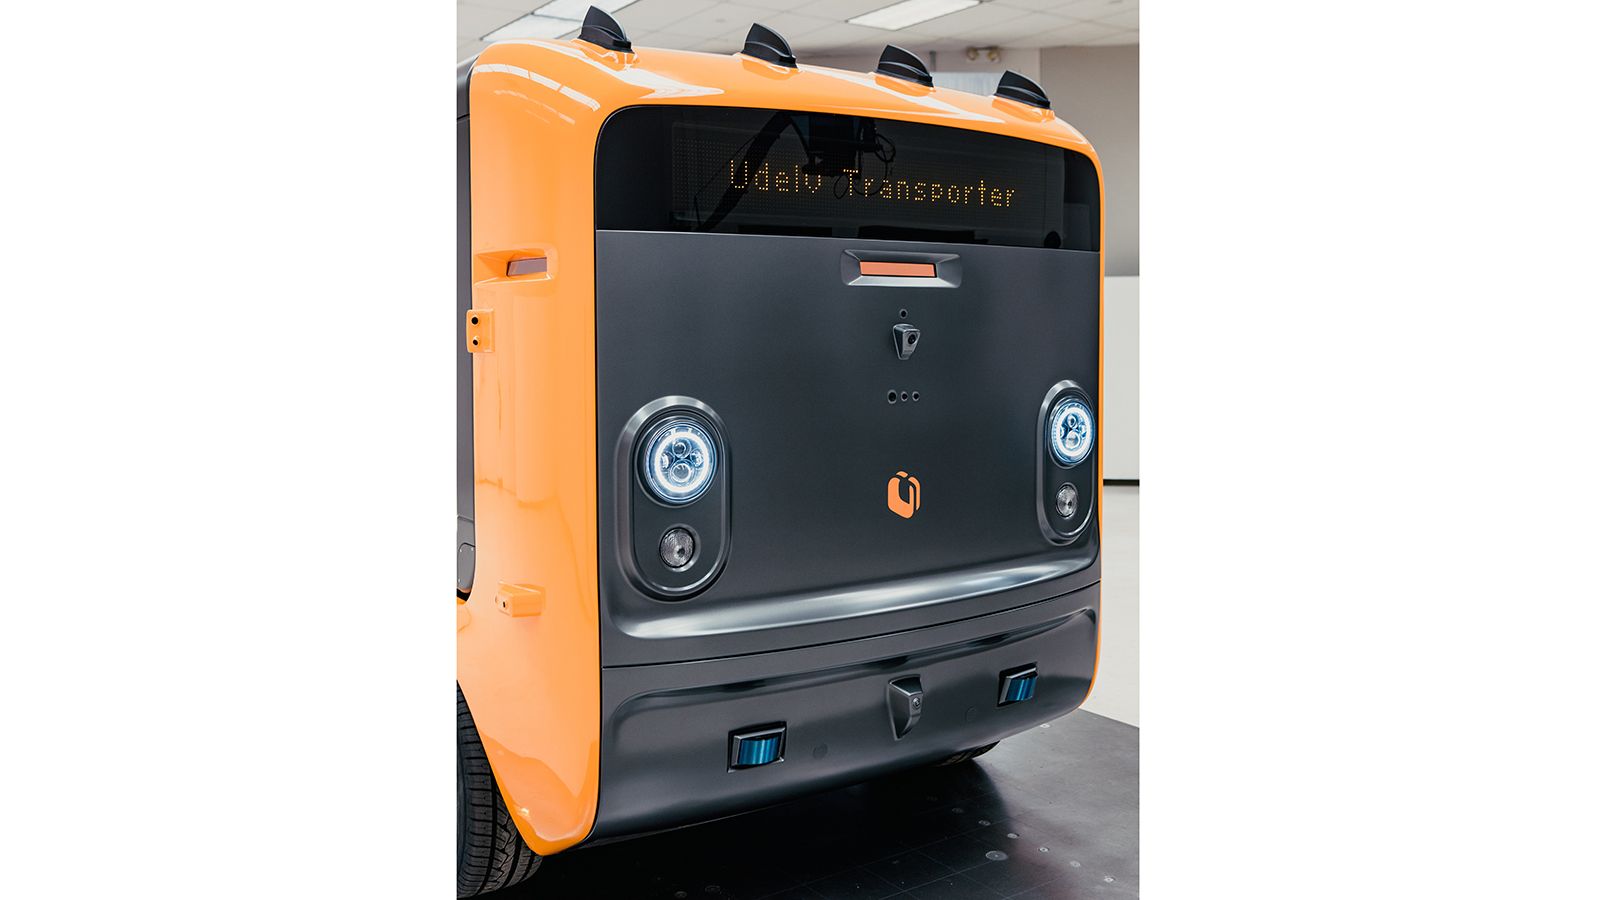 Το σύστημα αυτόνομης οδήγησης «Mobileye Drive» αποτελείται από μια σειρά καμερών, LiDAR και ραντάρ, ενώ ενσωματώνει την 5η γενιά του συστήματος «EyeQ», που έχει δημιουργήσει η Mobileye ειδικά για αυτο